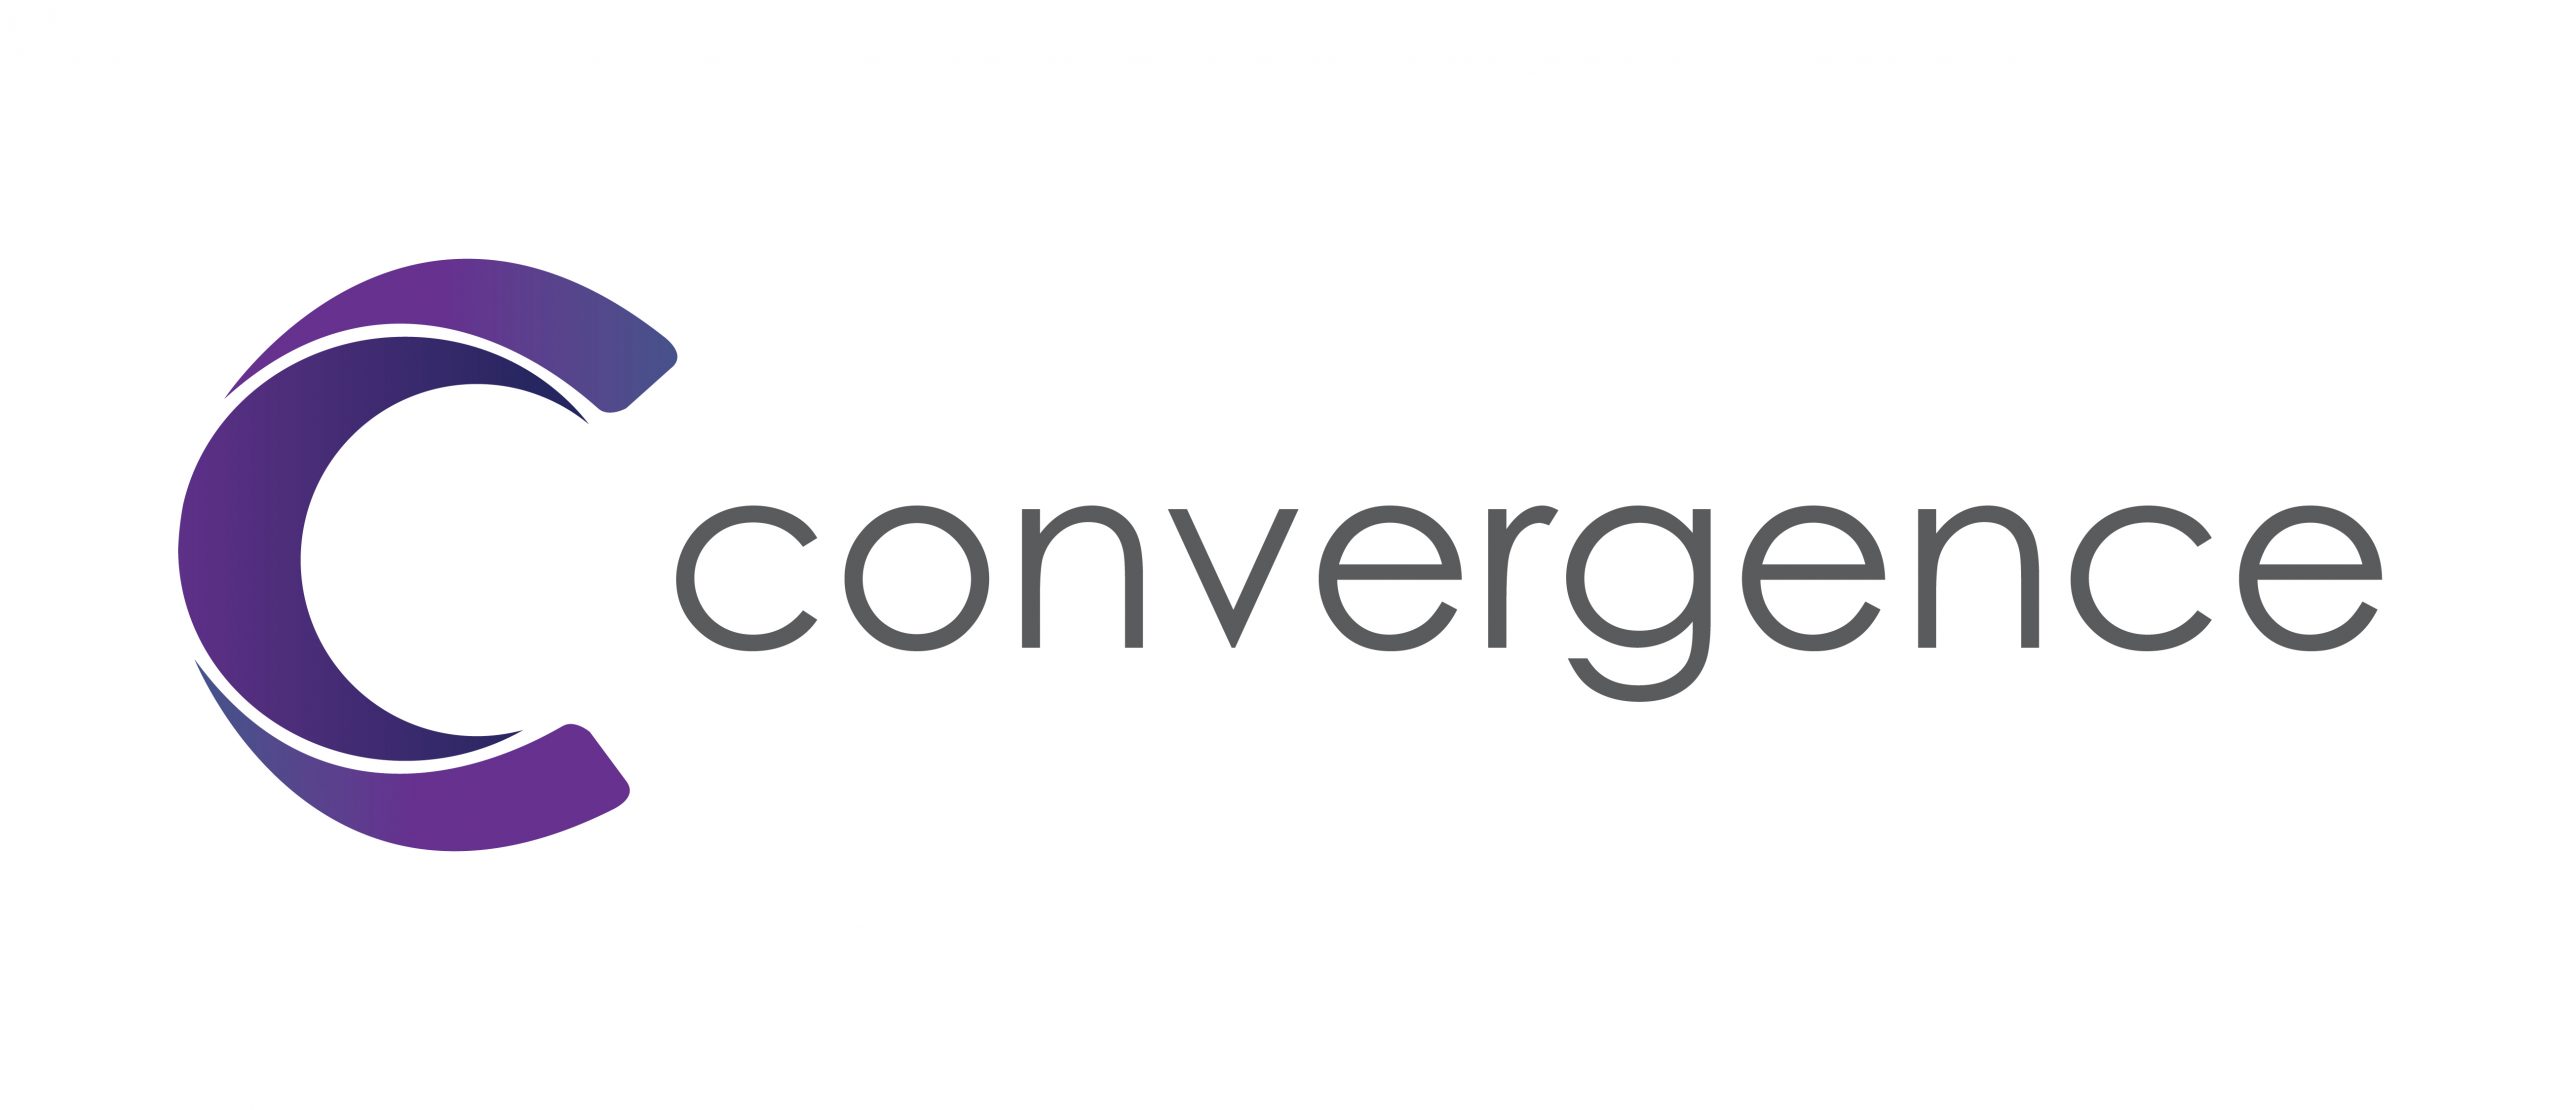 Convergence Concepts Pte Ltd